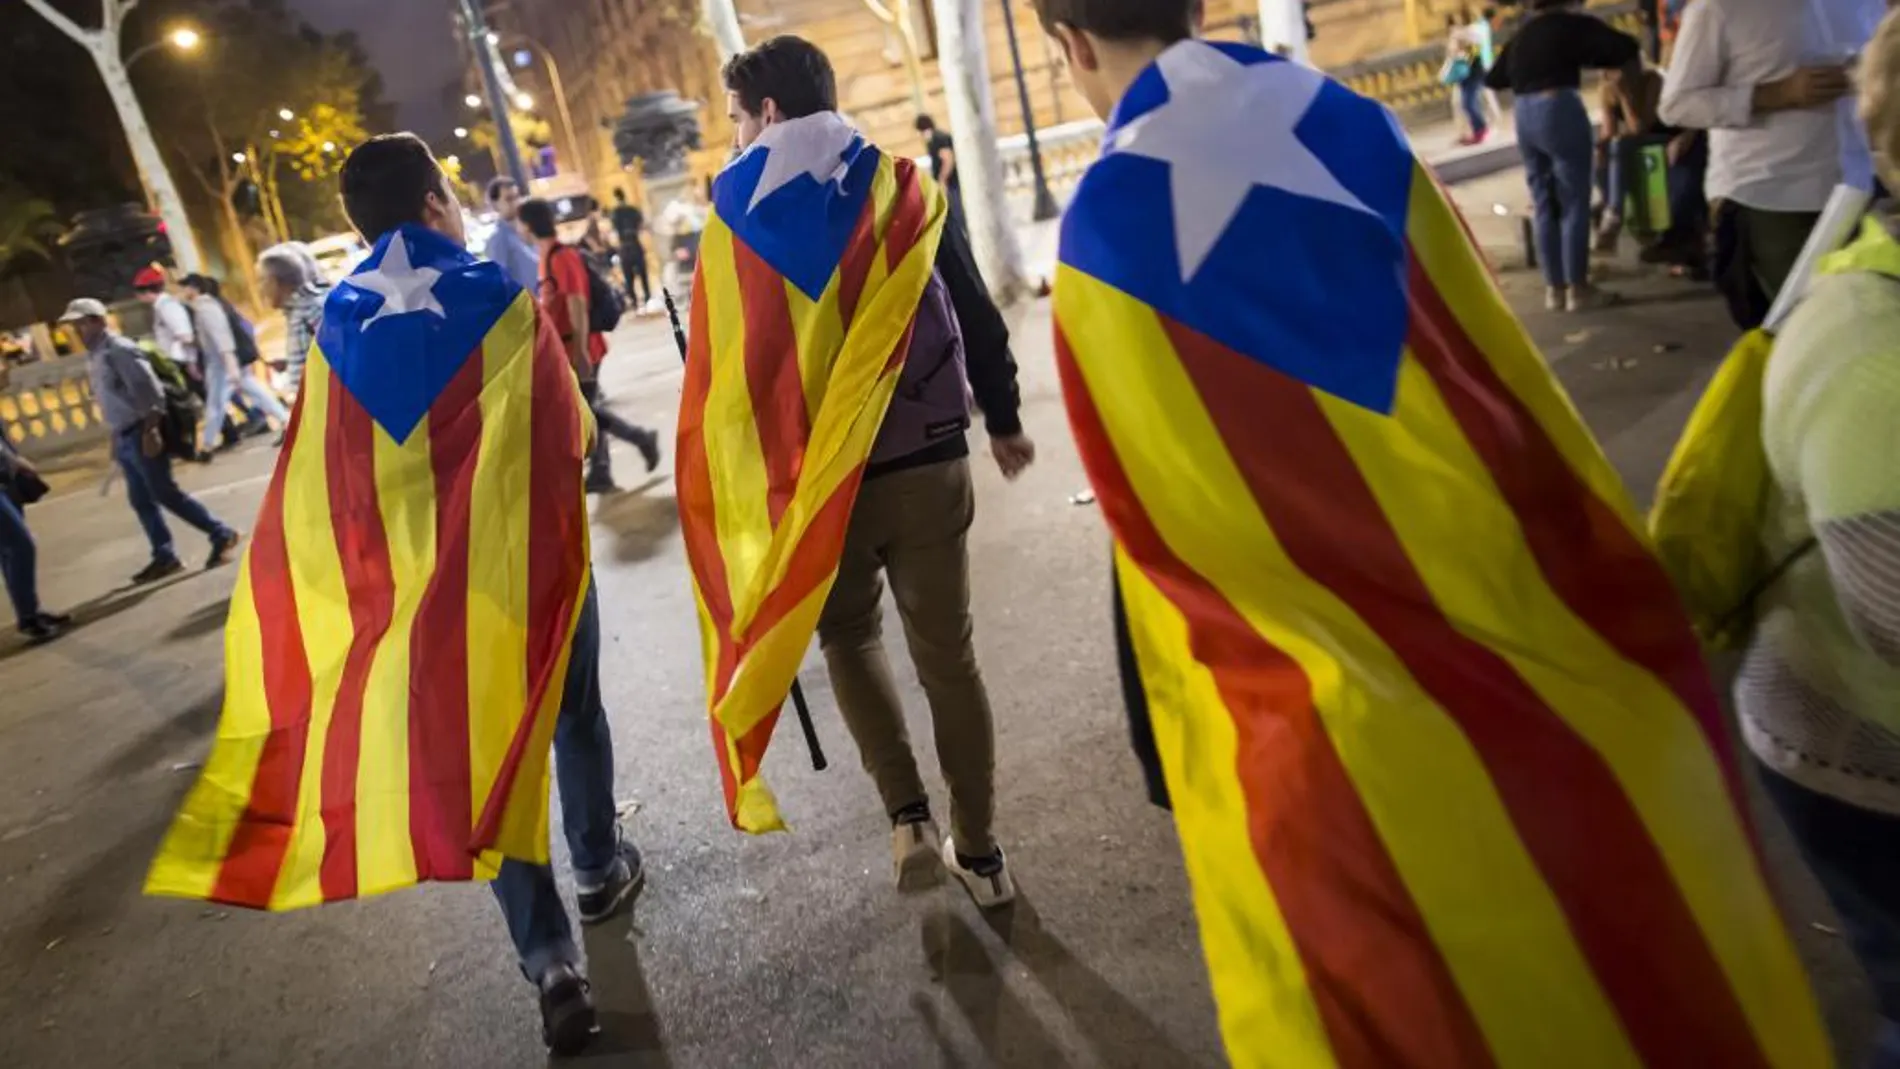 Trampa al Estado: Rajoy activa medidas excepcionales